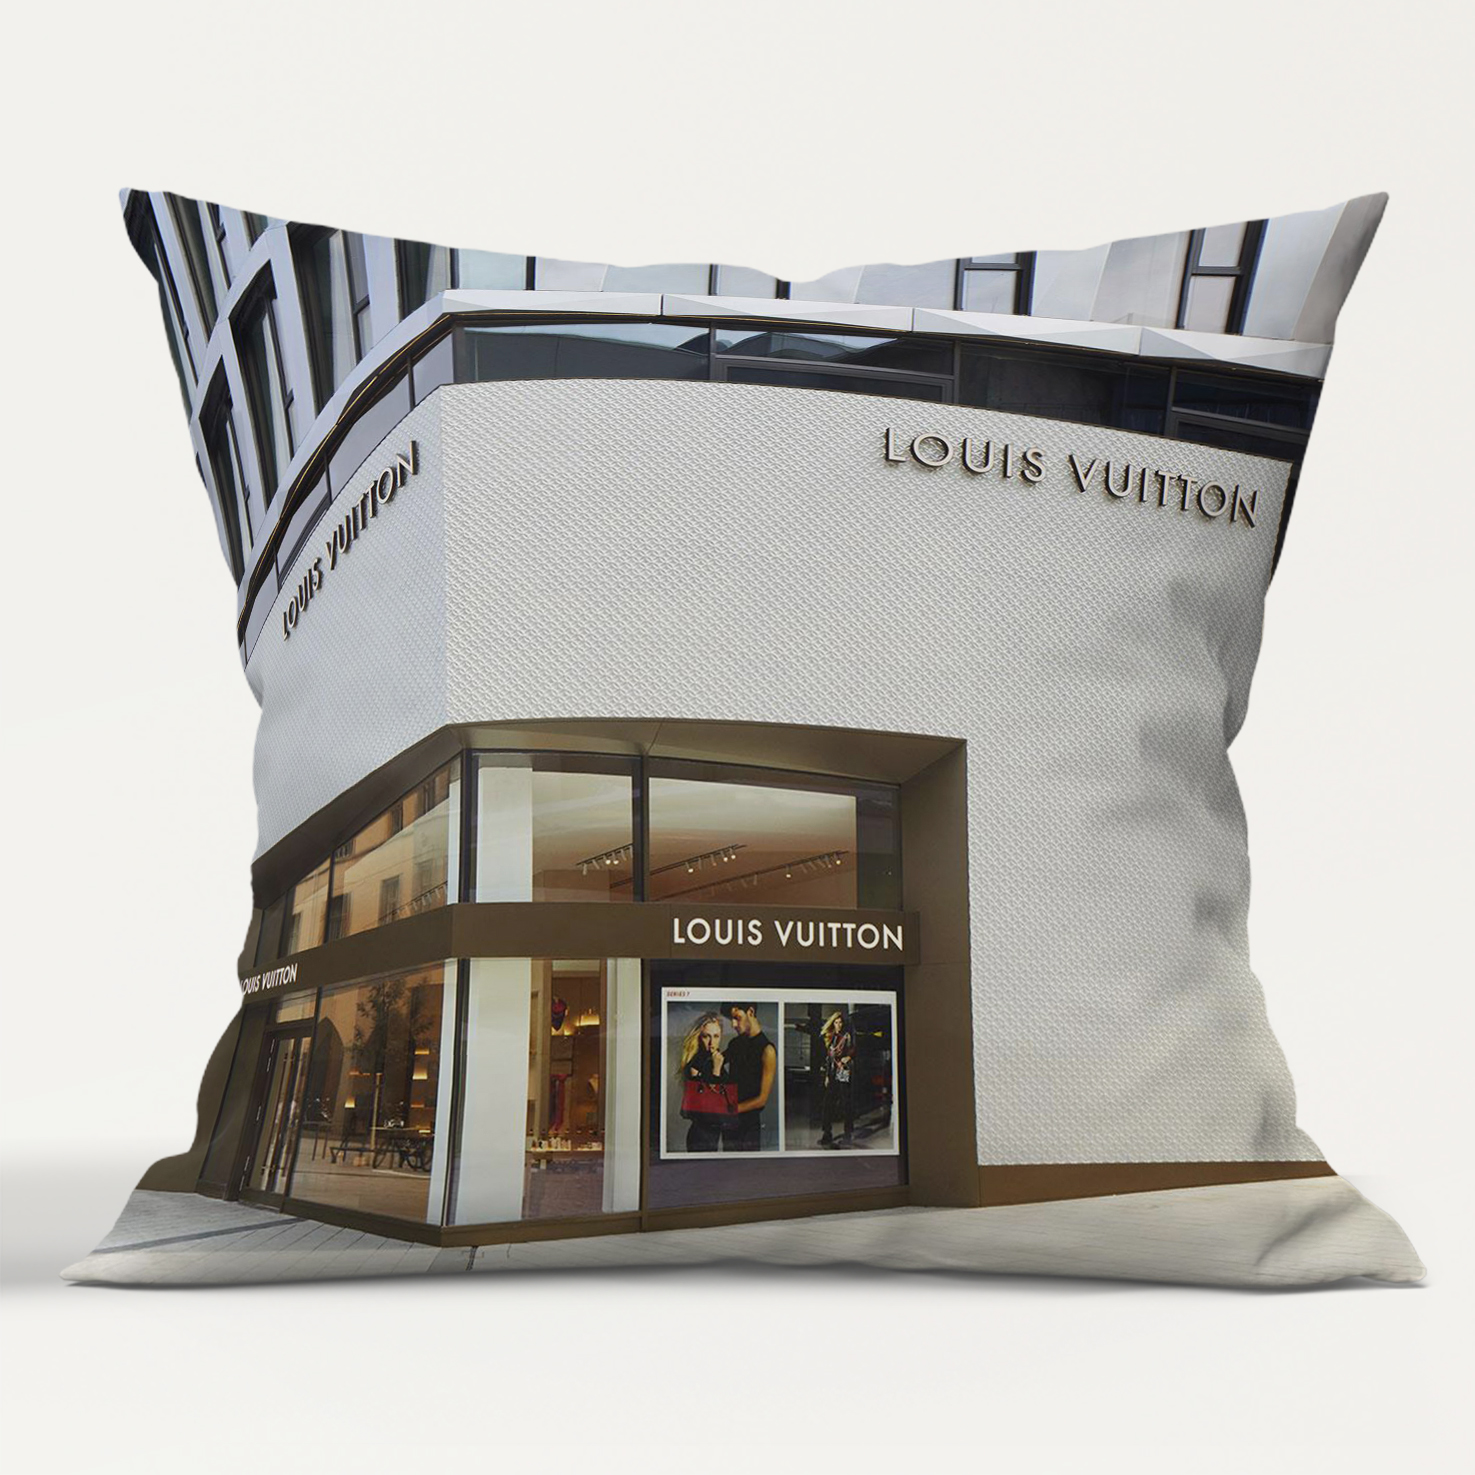 Louis Vuitton Company